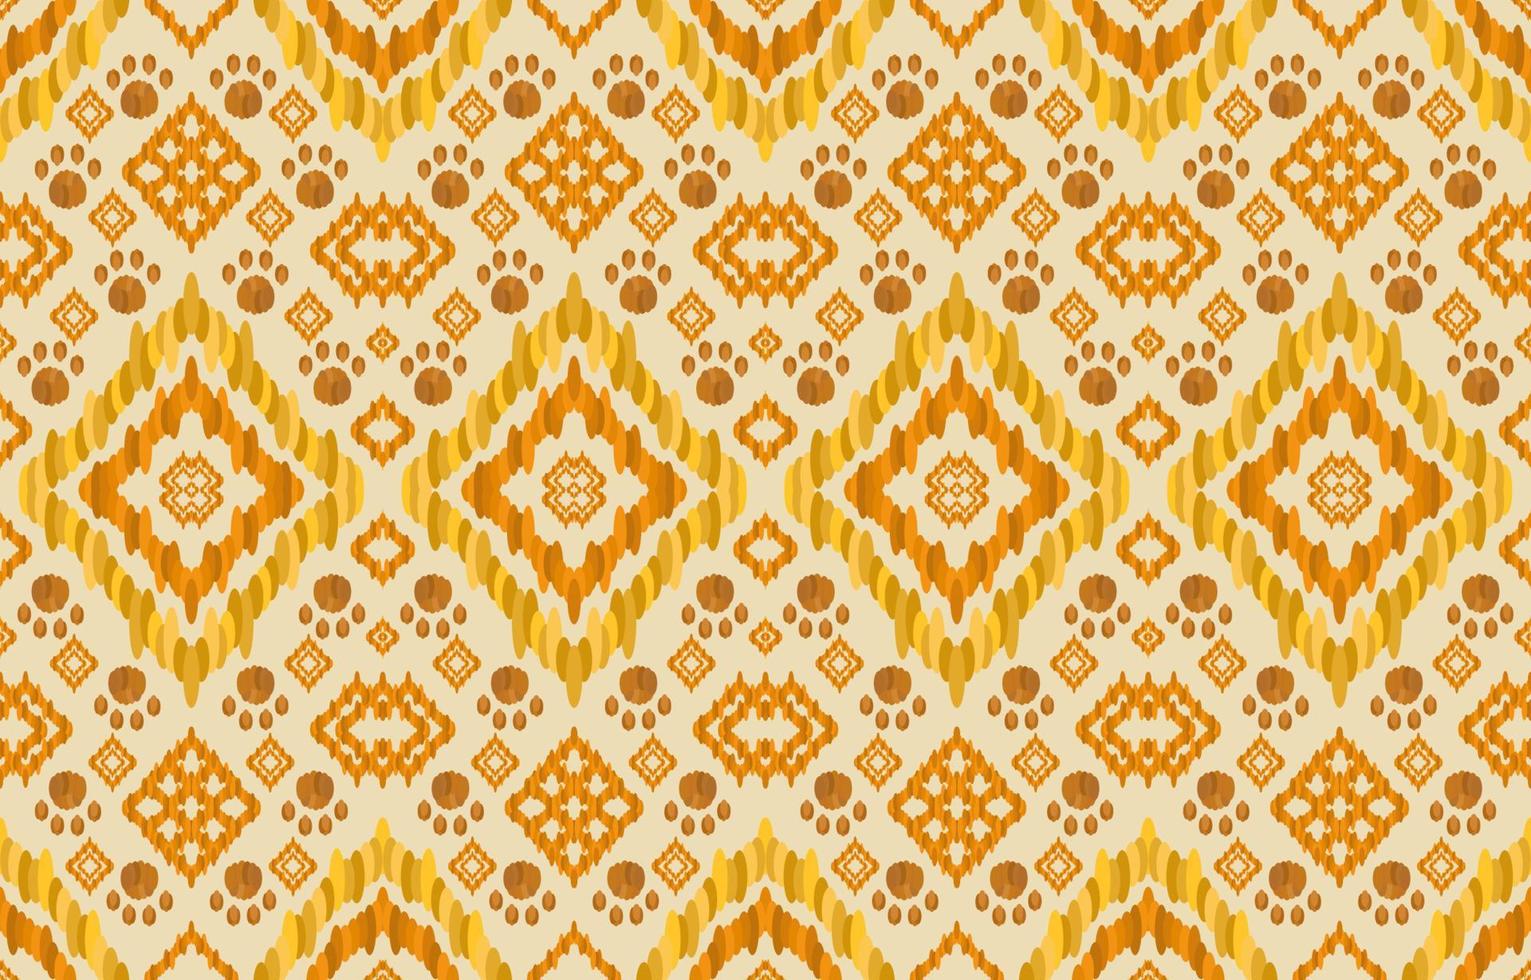 patrones de ikat de color marrón anaranjado amarillo dorado. línea geométrica de semillas de arroz y estilo tribal elegante de lujo con estampado de pata. tela étnica ikat de patrones sin fisuras. diseño de vectores populares asiáticos para ropa textil.